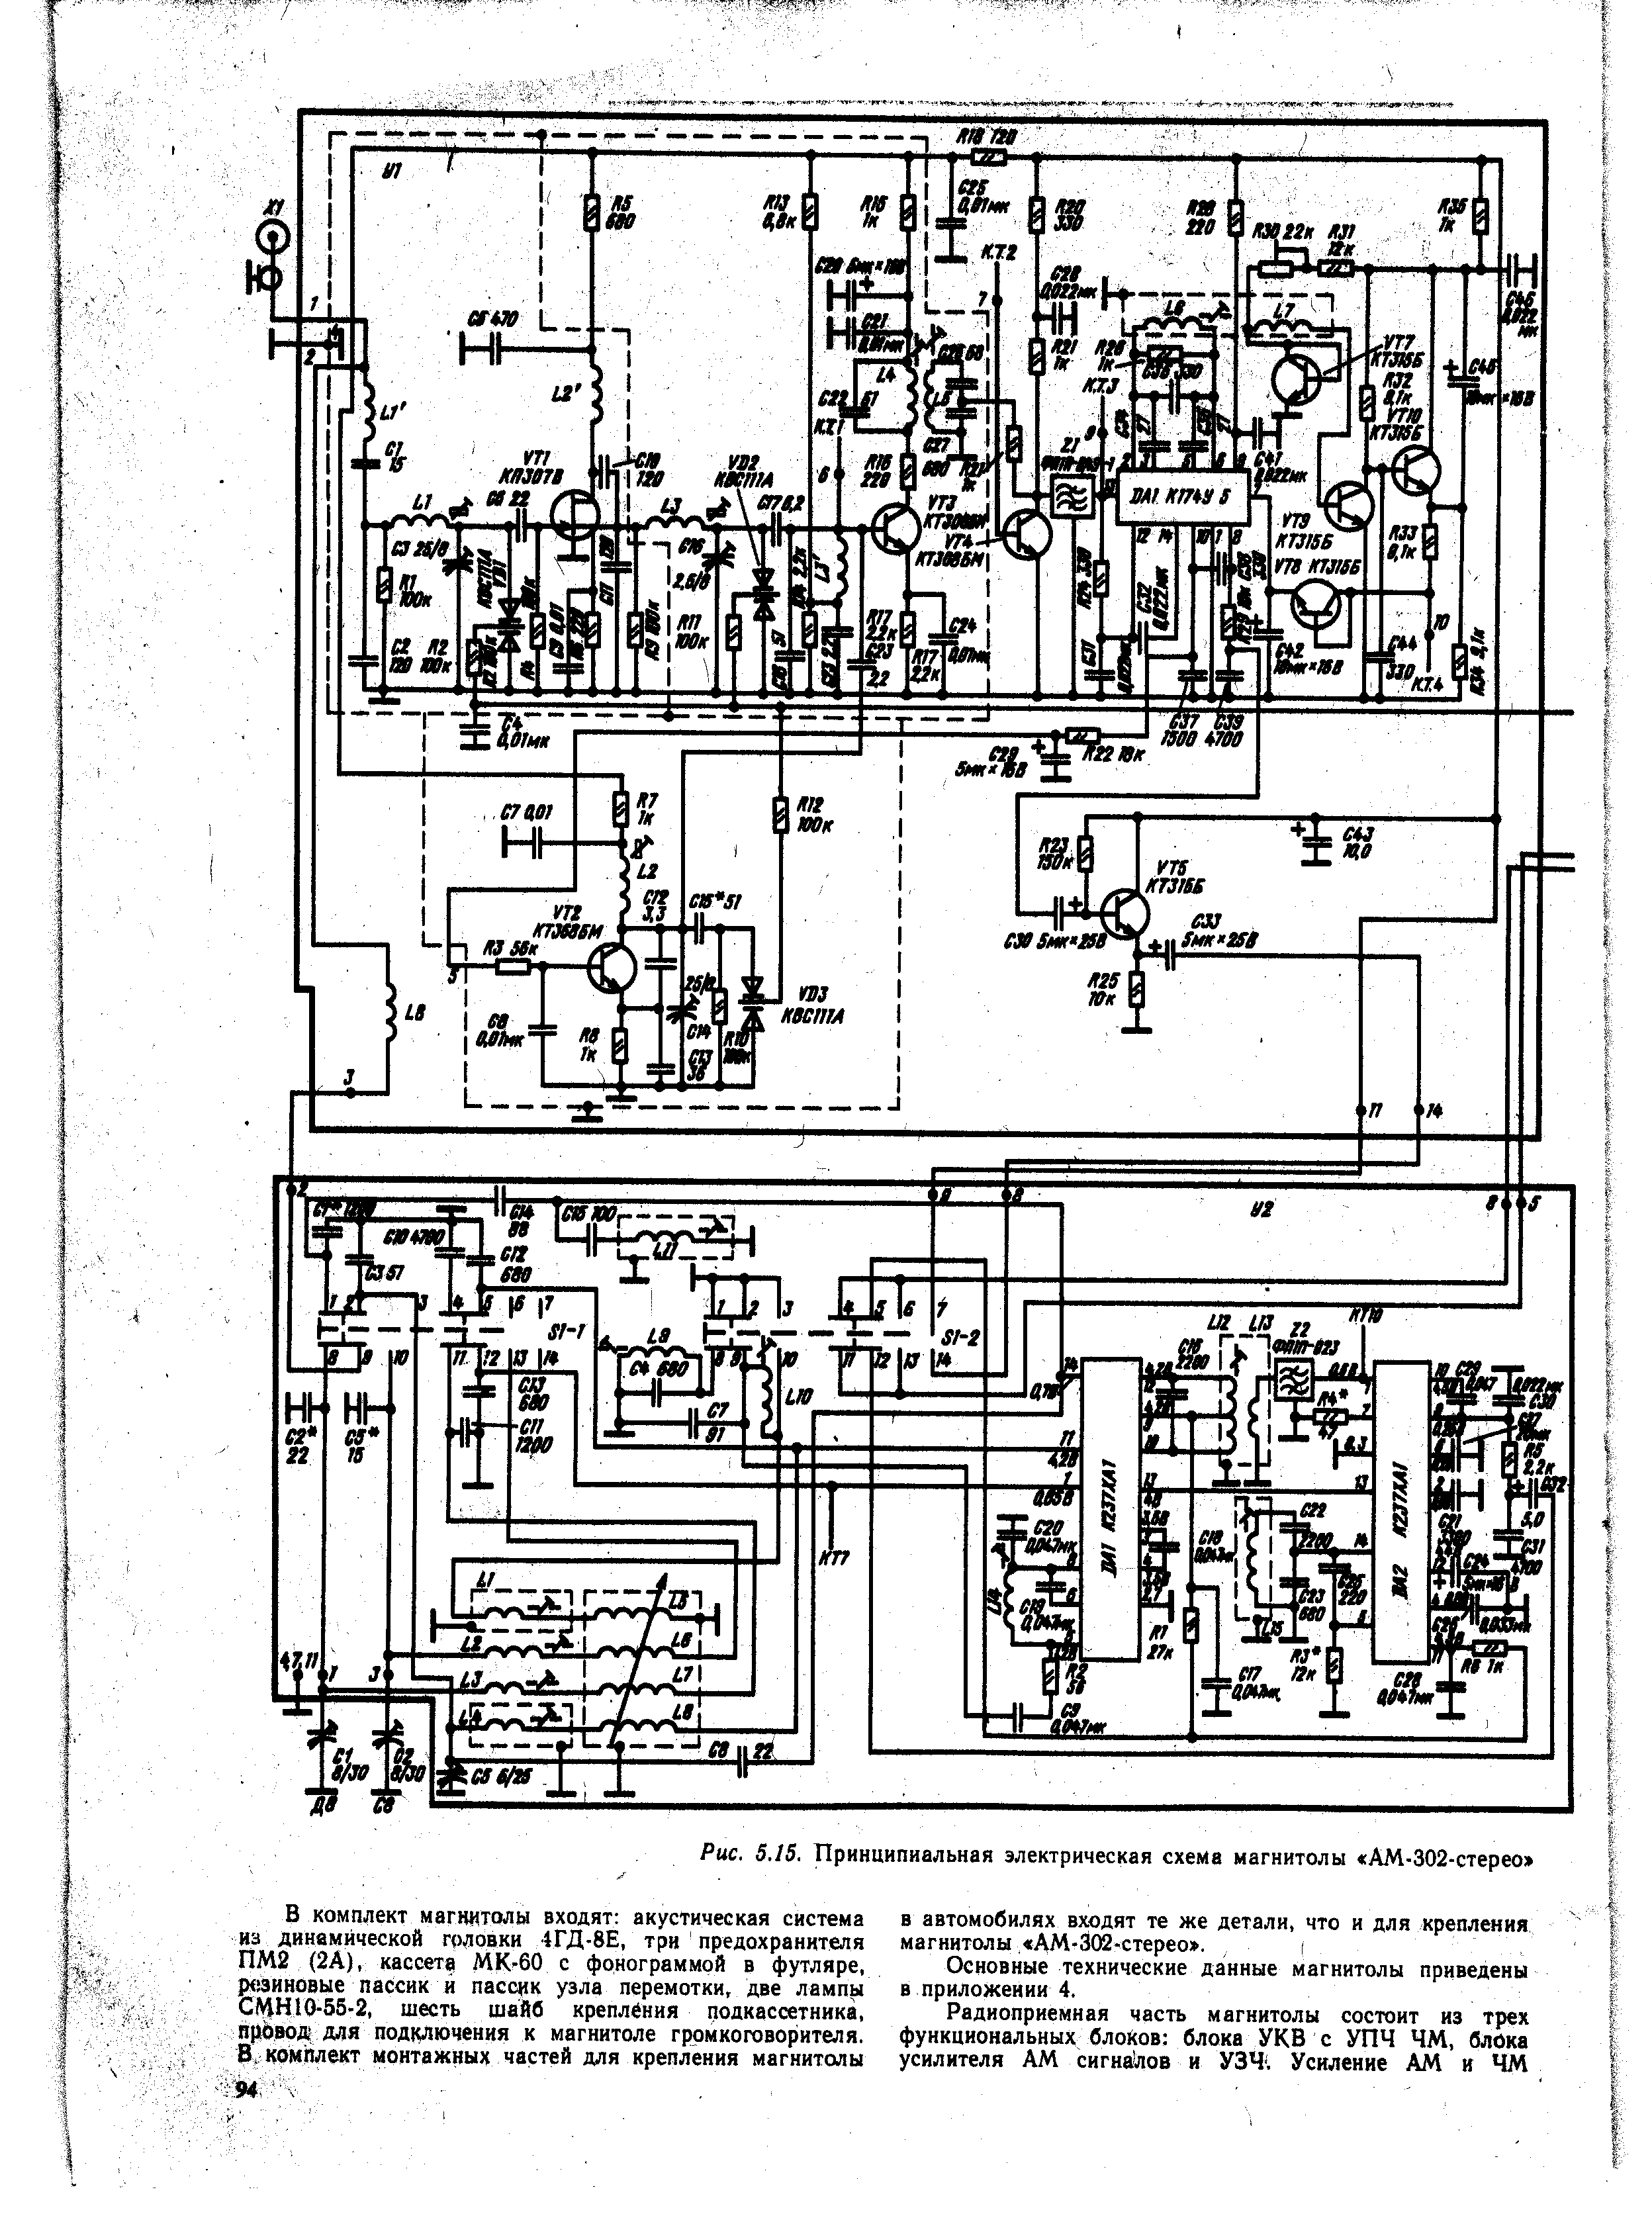 Электроника 302 схема